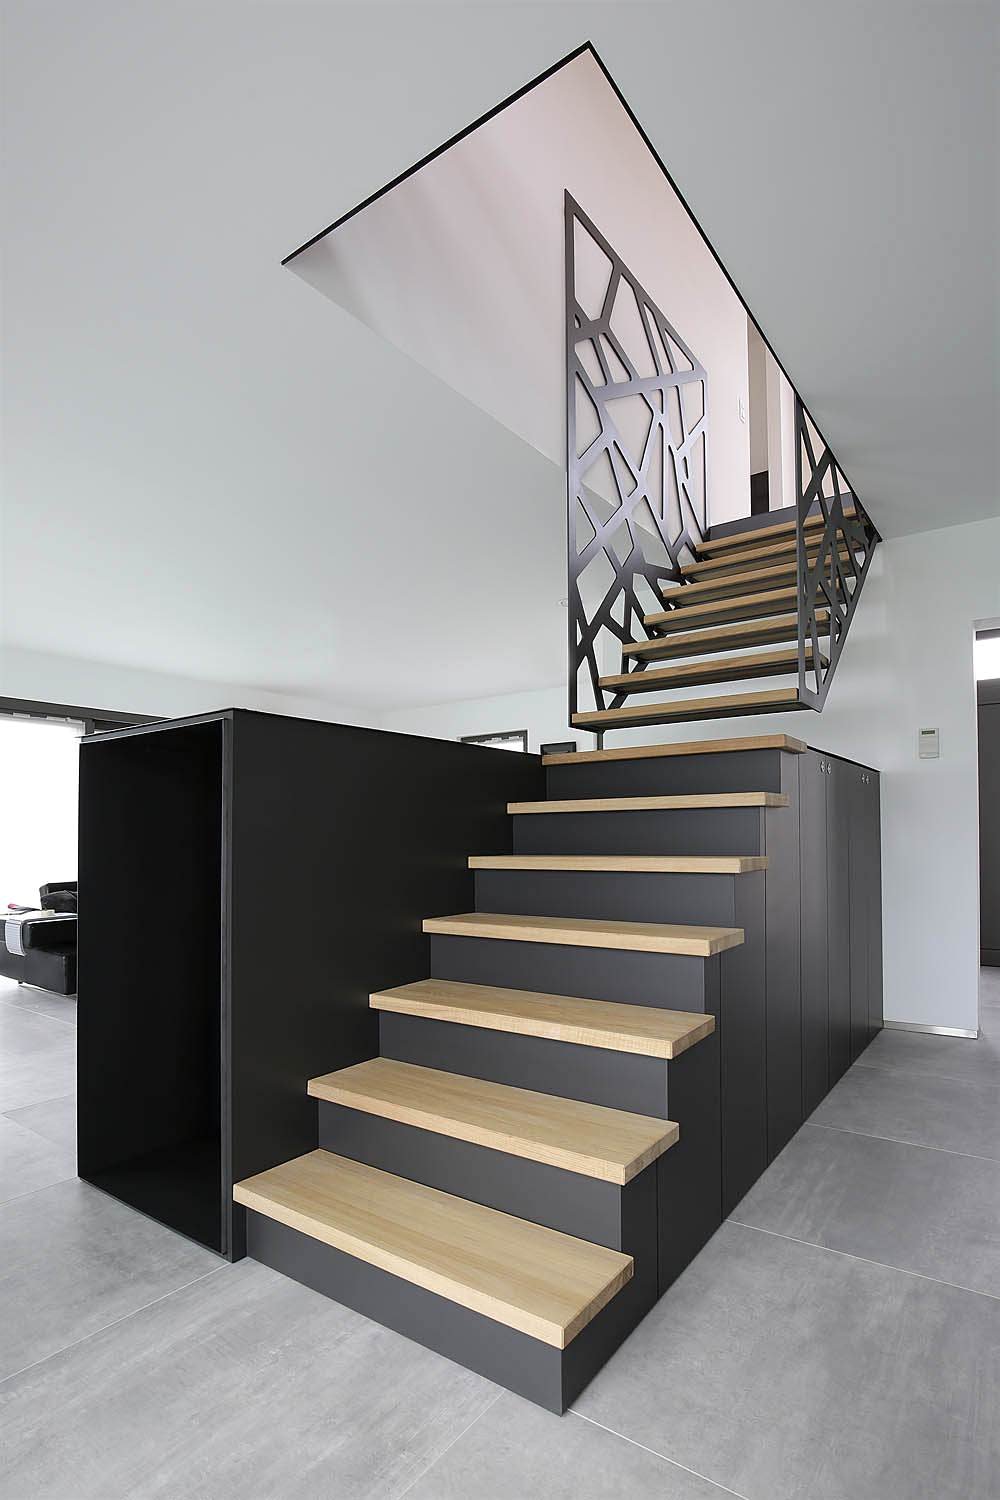 Design scala in legno, stile moderno, realizzata in due pezzi - la parte bassa che si prolunga con un armadio e la parte superiore che si aggancia alla ringhiera del piano superiore